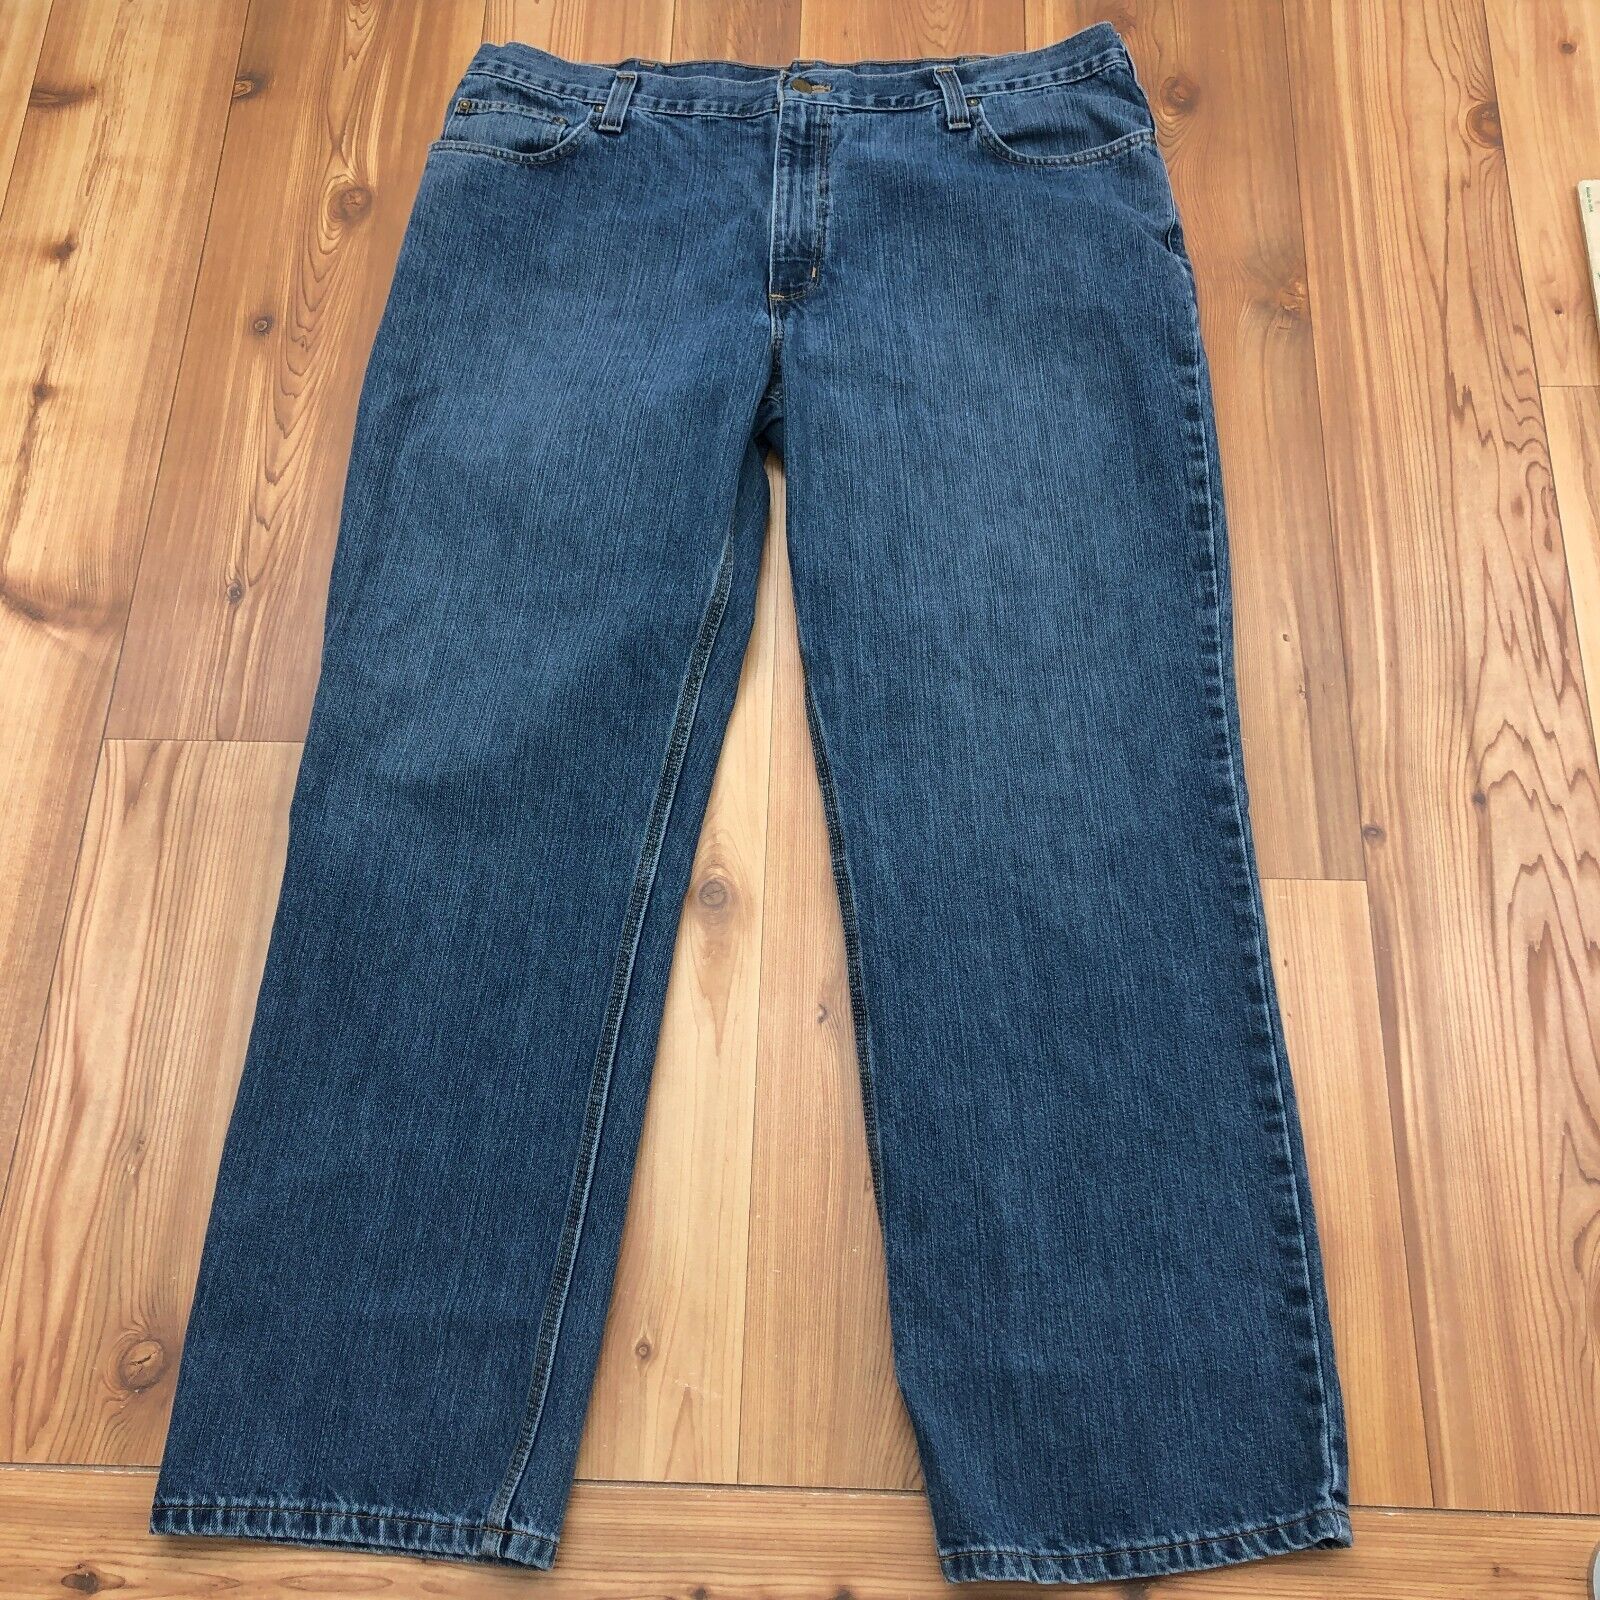 Carhartt Blue Denim Jeans Relaxed Fit Straight Leg Men Waist Size 40 x 32 Length